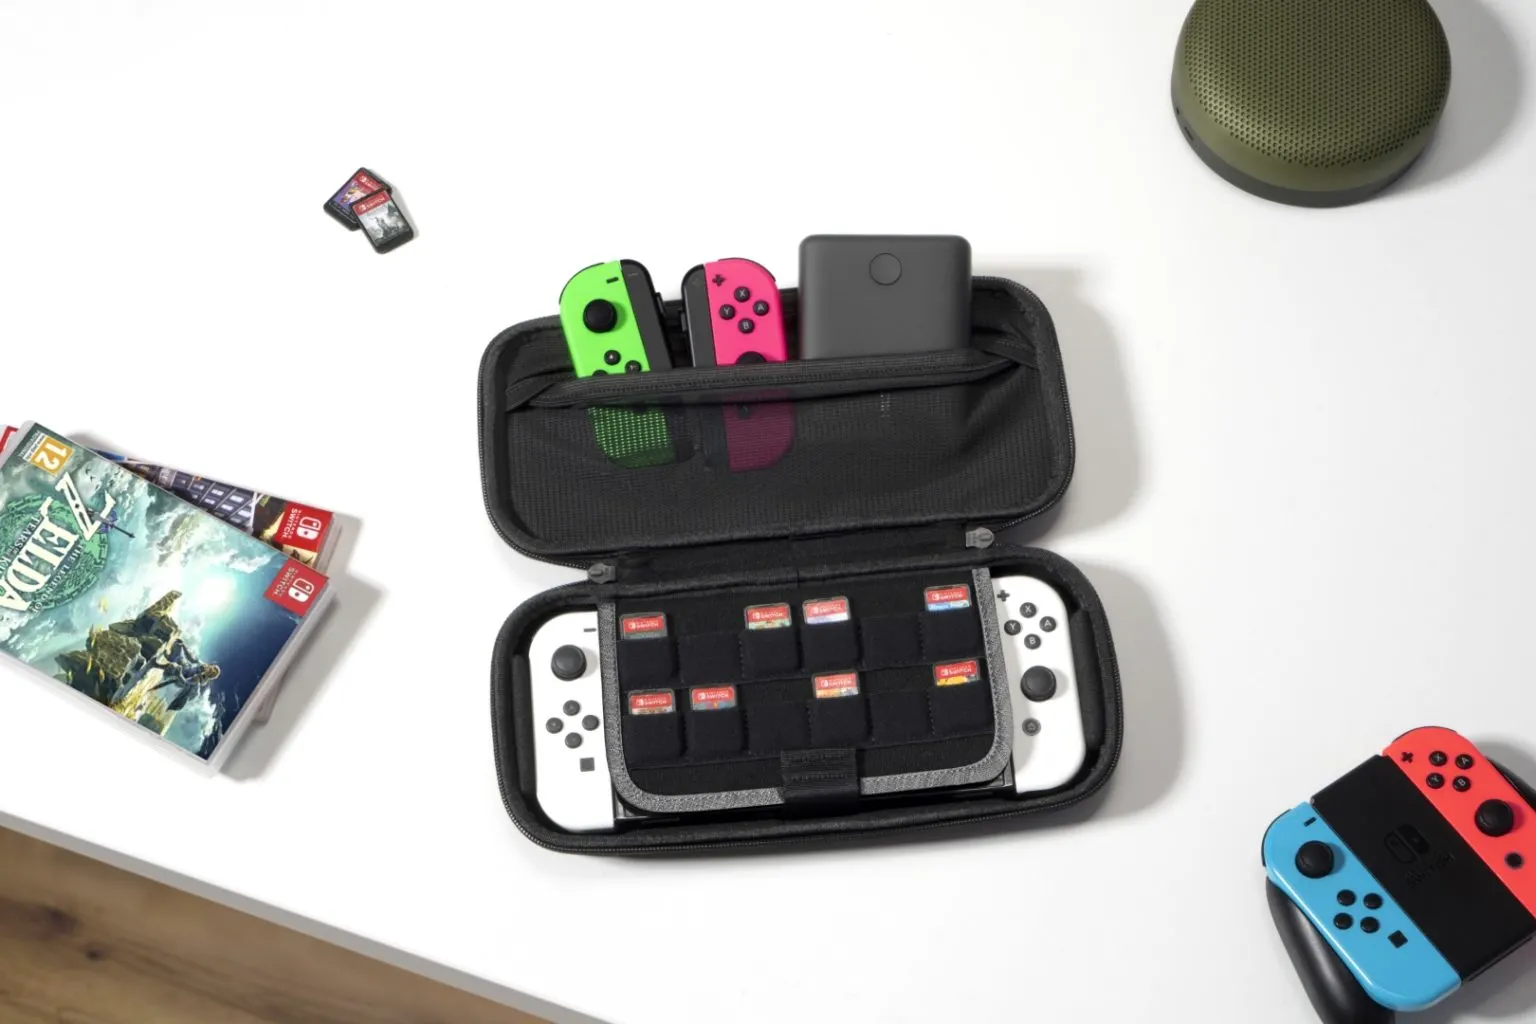 tomtoc mang đến nhiều lựa chọn túi chống sốc cho game thủ Nintendo Switch và Steam Deck